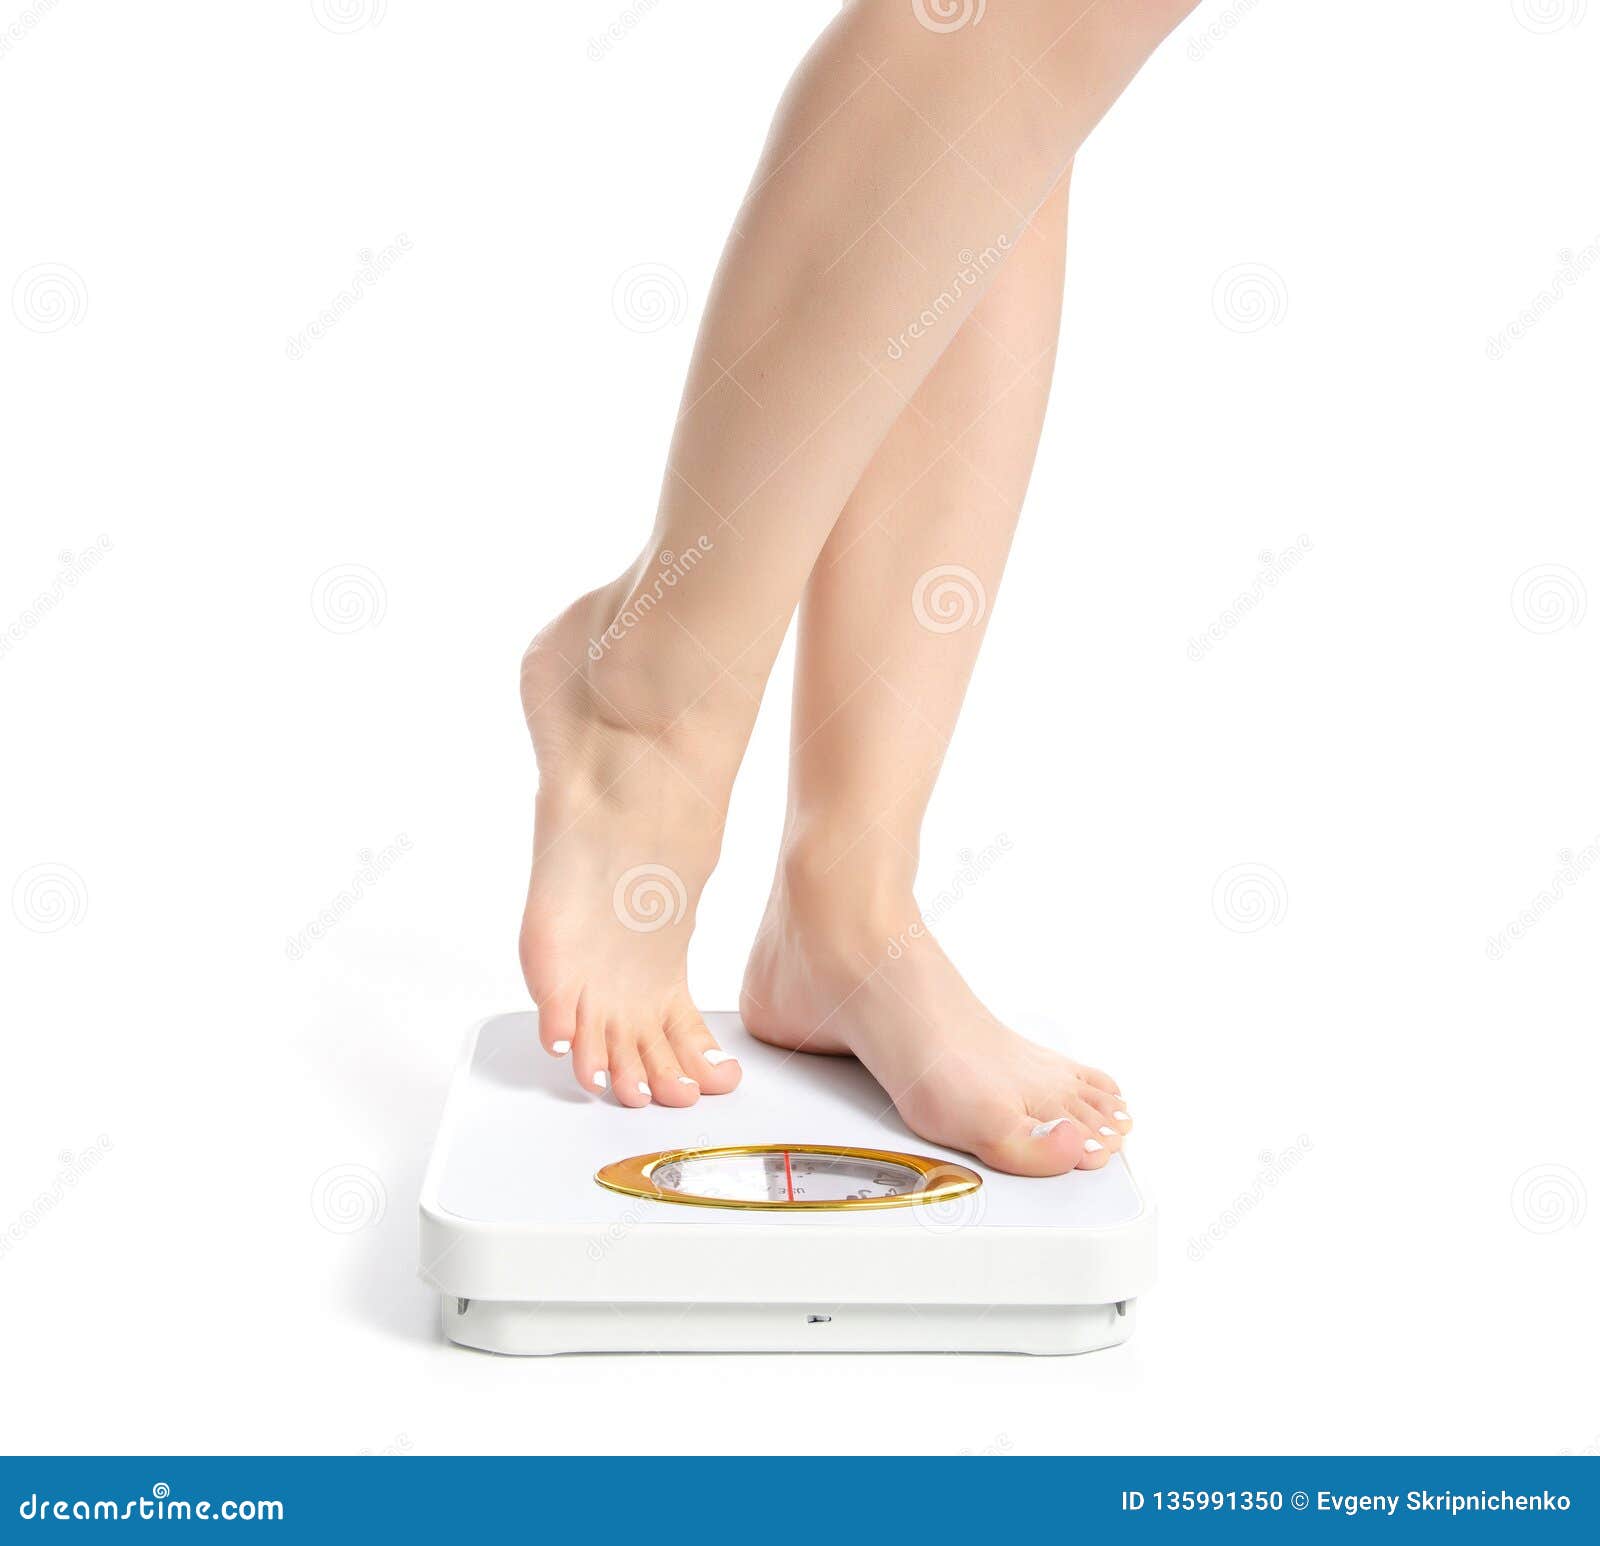 https://thumbs.dreamstime.com/z/female-feet-weighing-scale-female-feet-weighing-scale-white-background-isolation-135991350.jpg